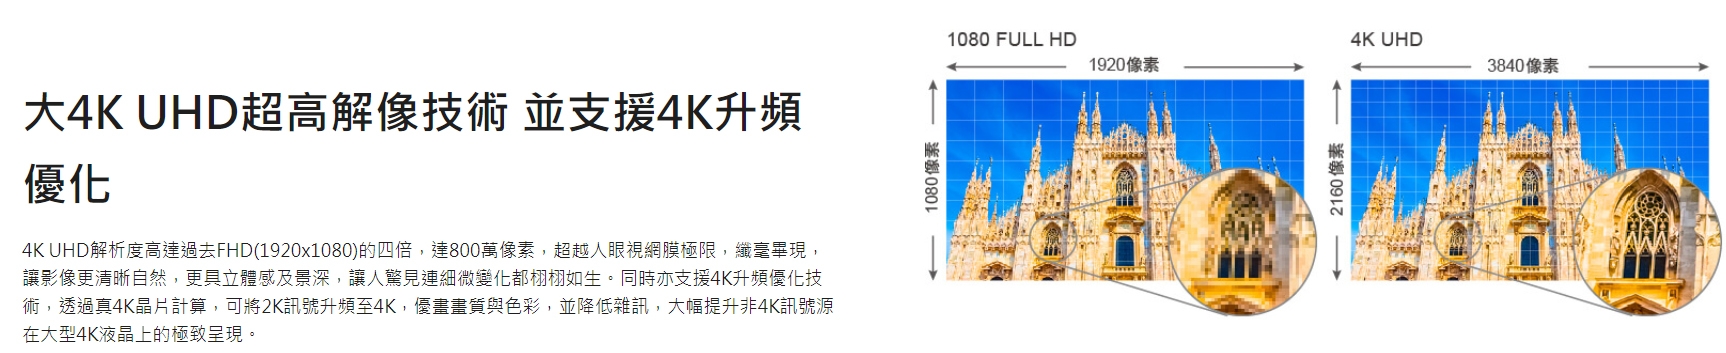 奇美CHIMEI 49吋 4K 智慧連網液晶顯示器 TL-50R500